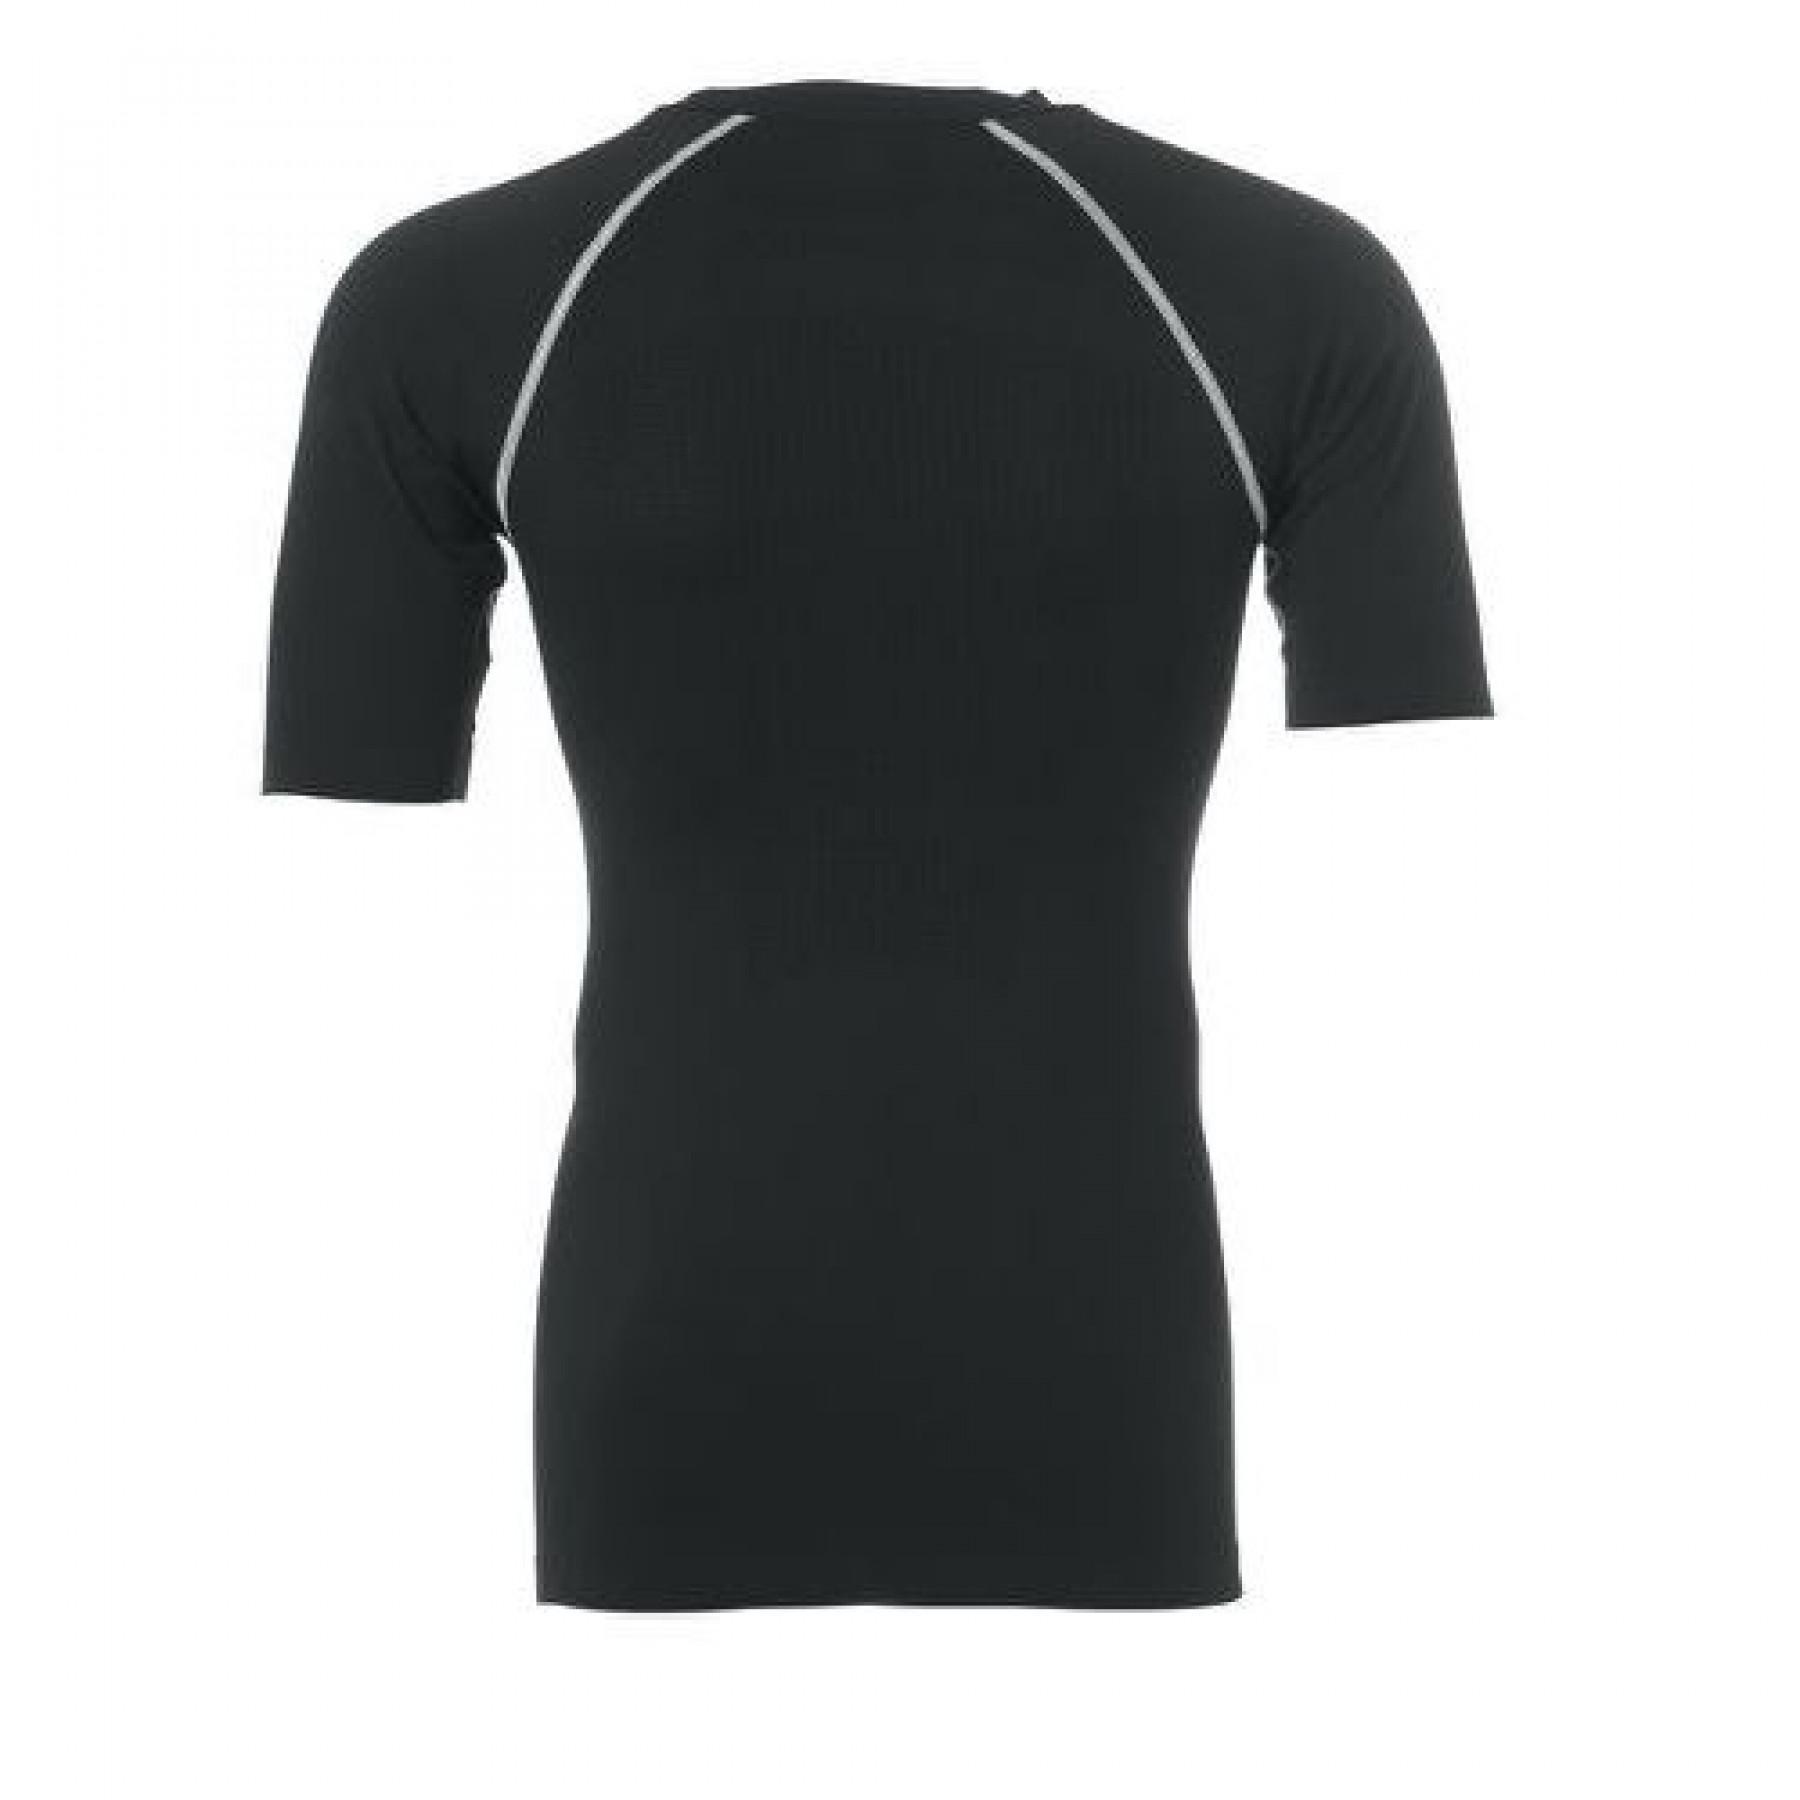 Short sleeve undershirt Uhlsport Distinction Pro Thermoshirt